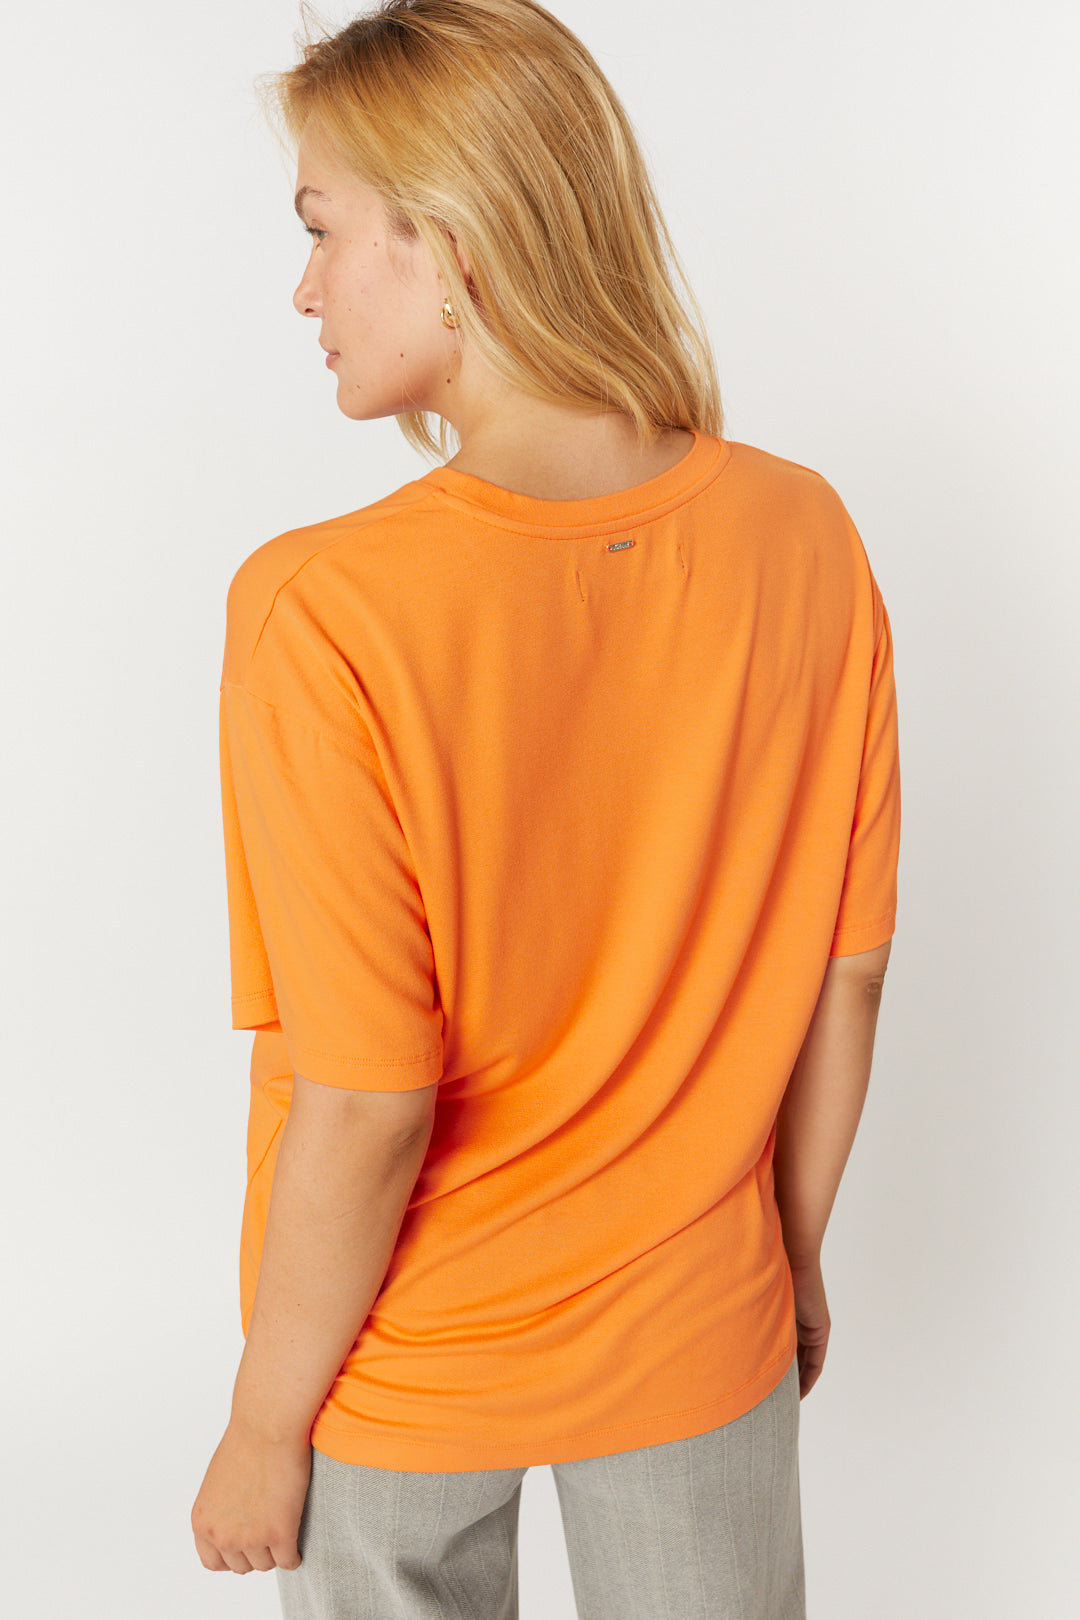 DUMMY PRODUCT - T-shirt orange ample | Laurenzo